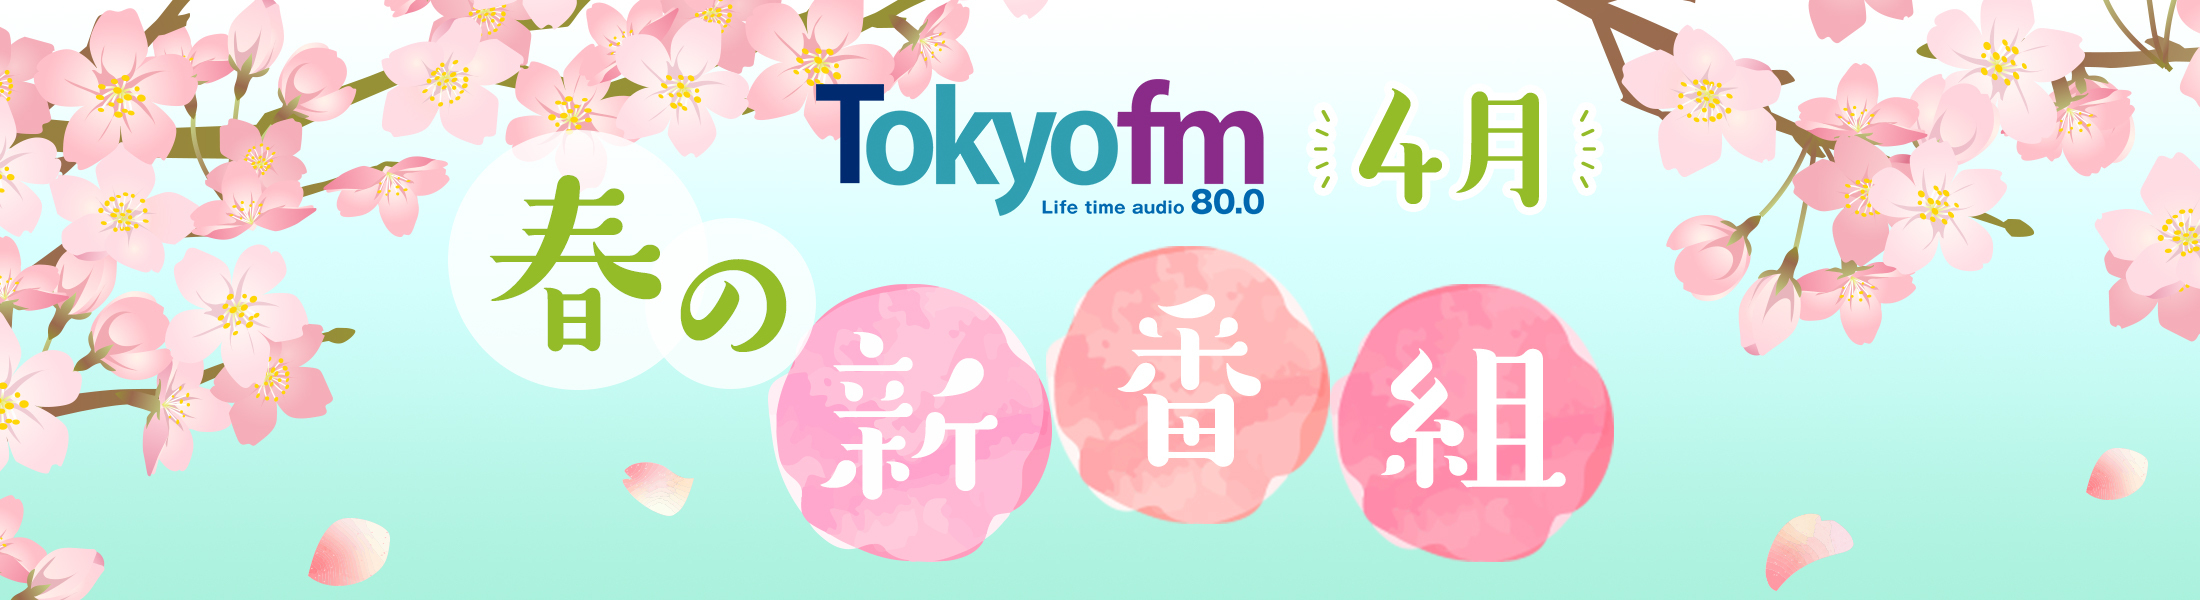 TOKYO FM新番組情報